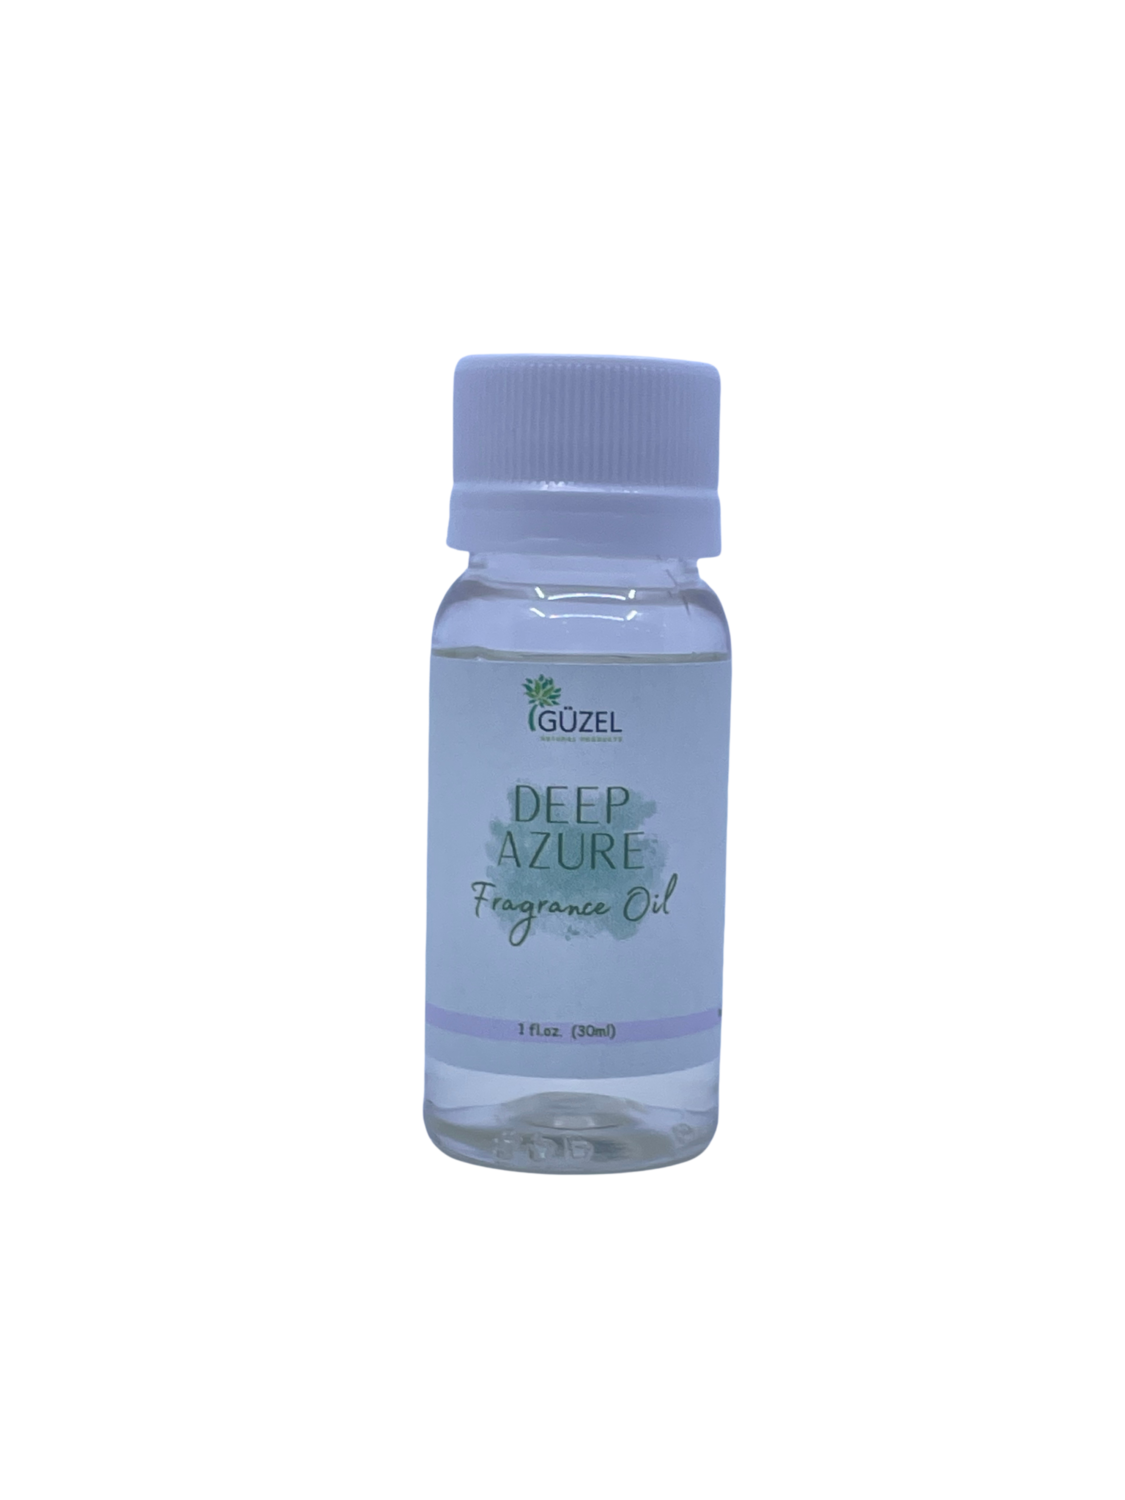 Deep Azure fragrance oil